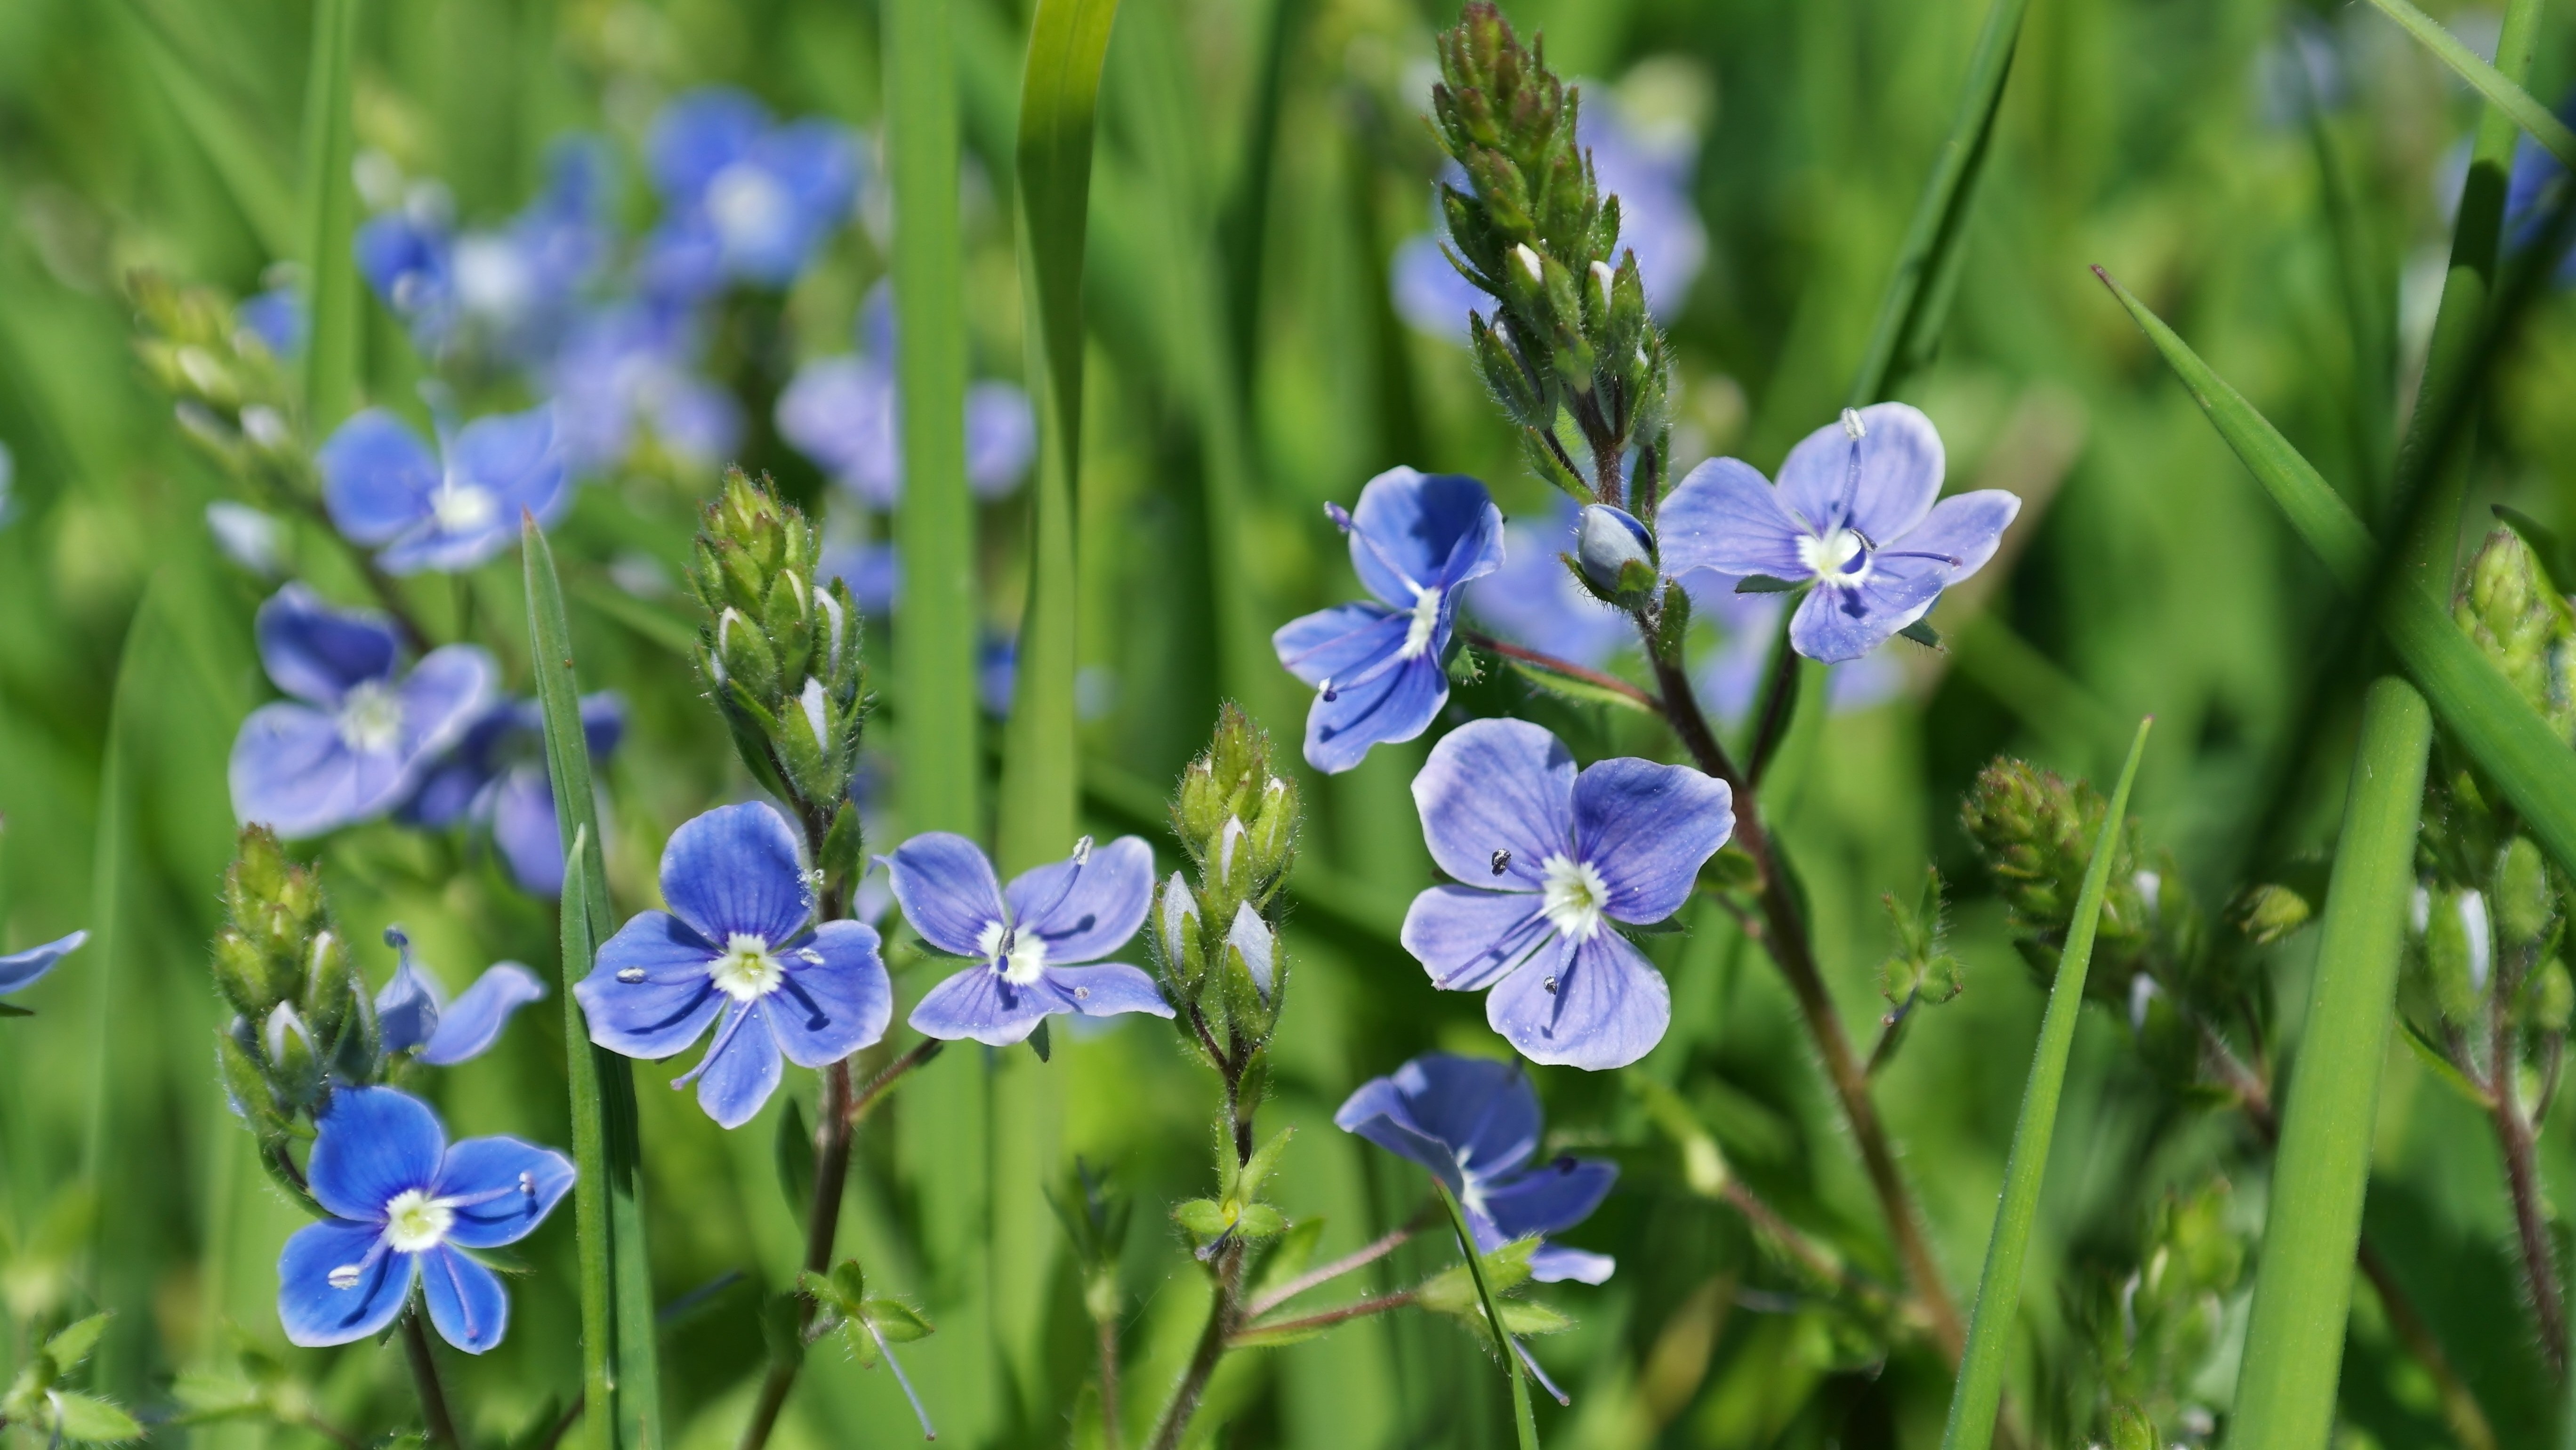 Синий цветок на лугу. Многолистник Луговой. Цветы голубенькие луговые. Полева трава с синими цветочками. Незабудка Полевая сорняк.